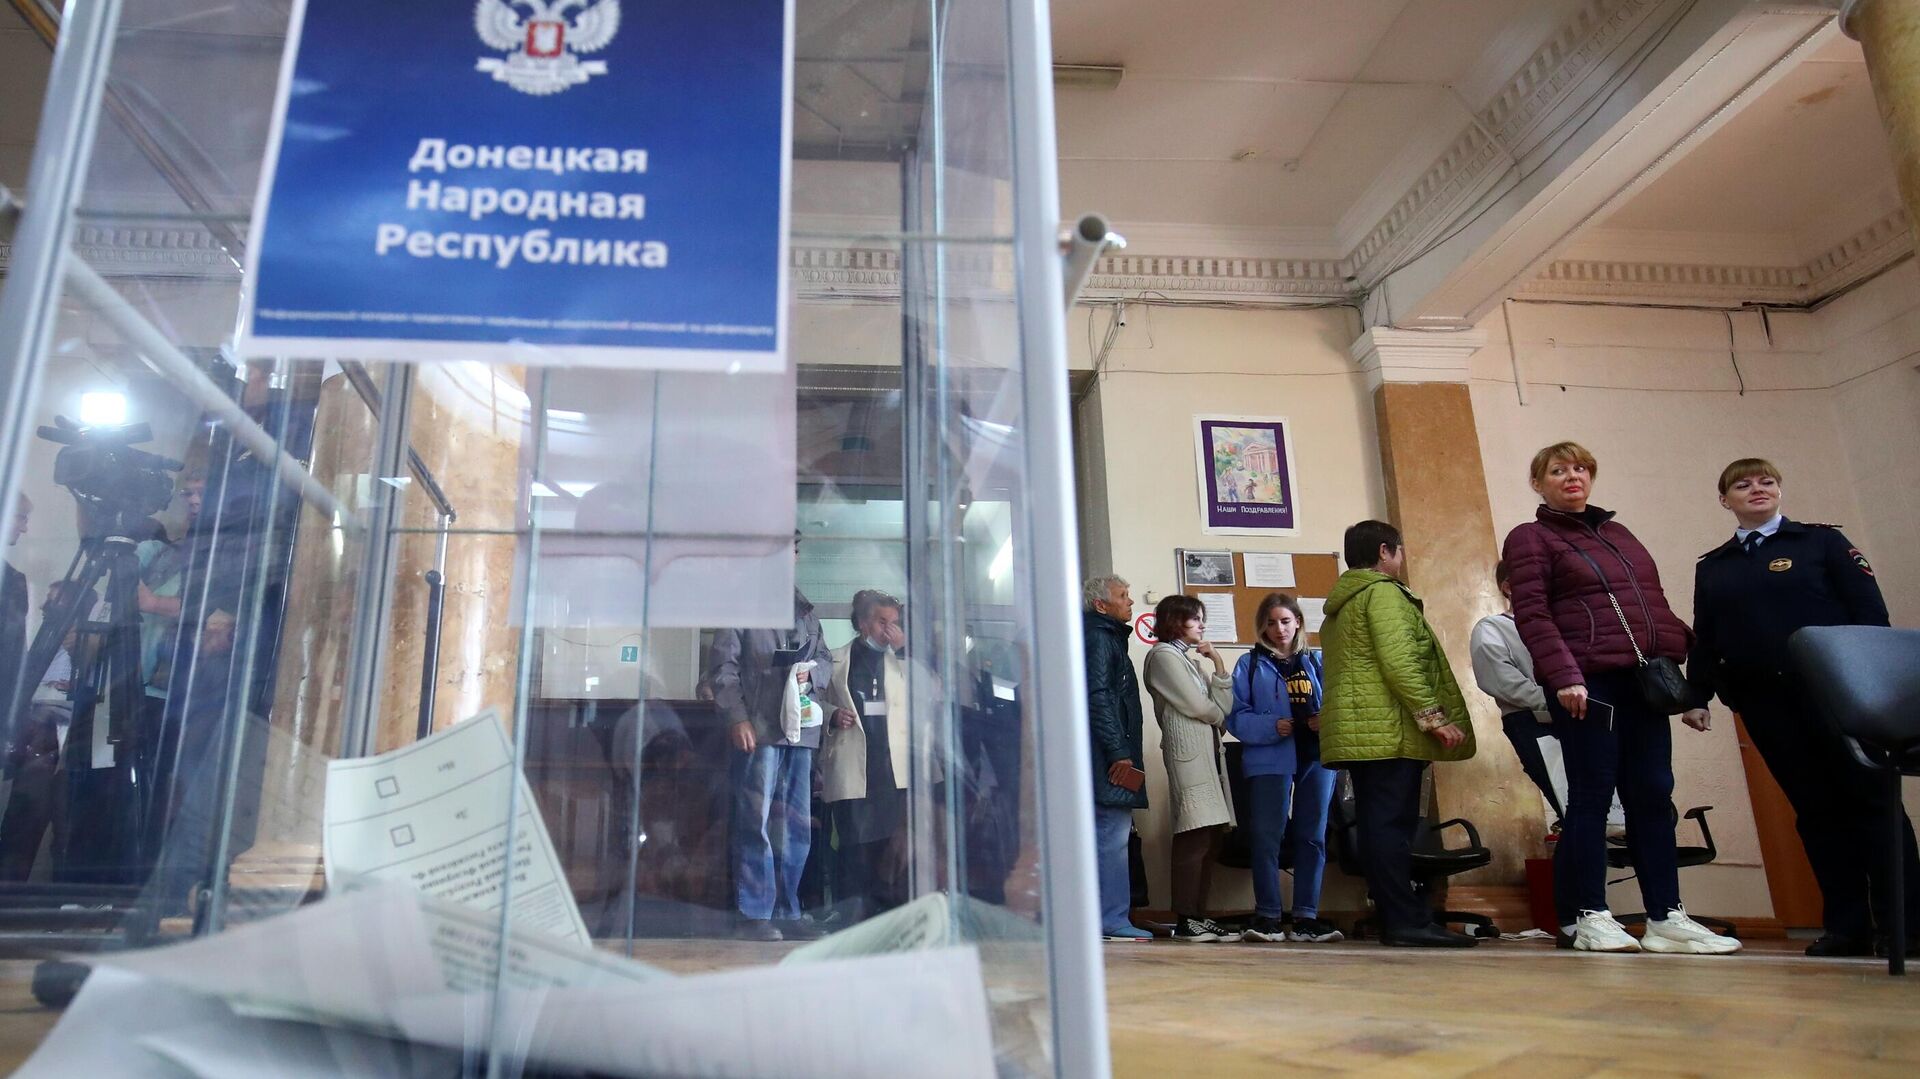 Бюллетени в урне для голосования на избирательном участке - РИА Новости, 1920, 04.10.2022